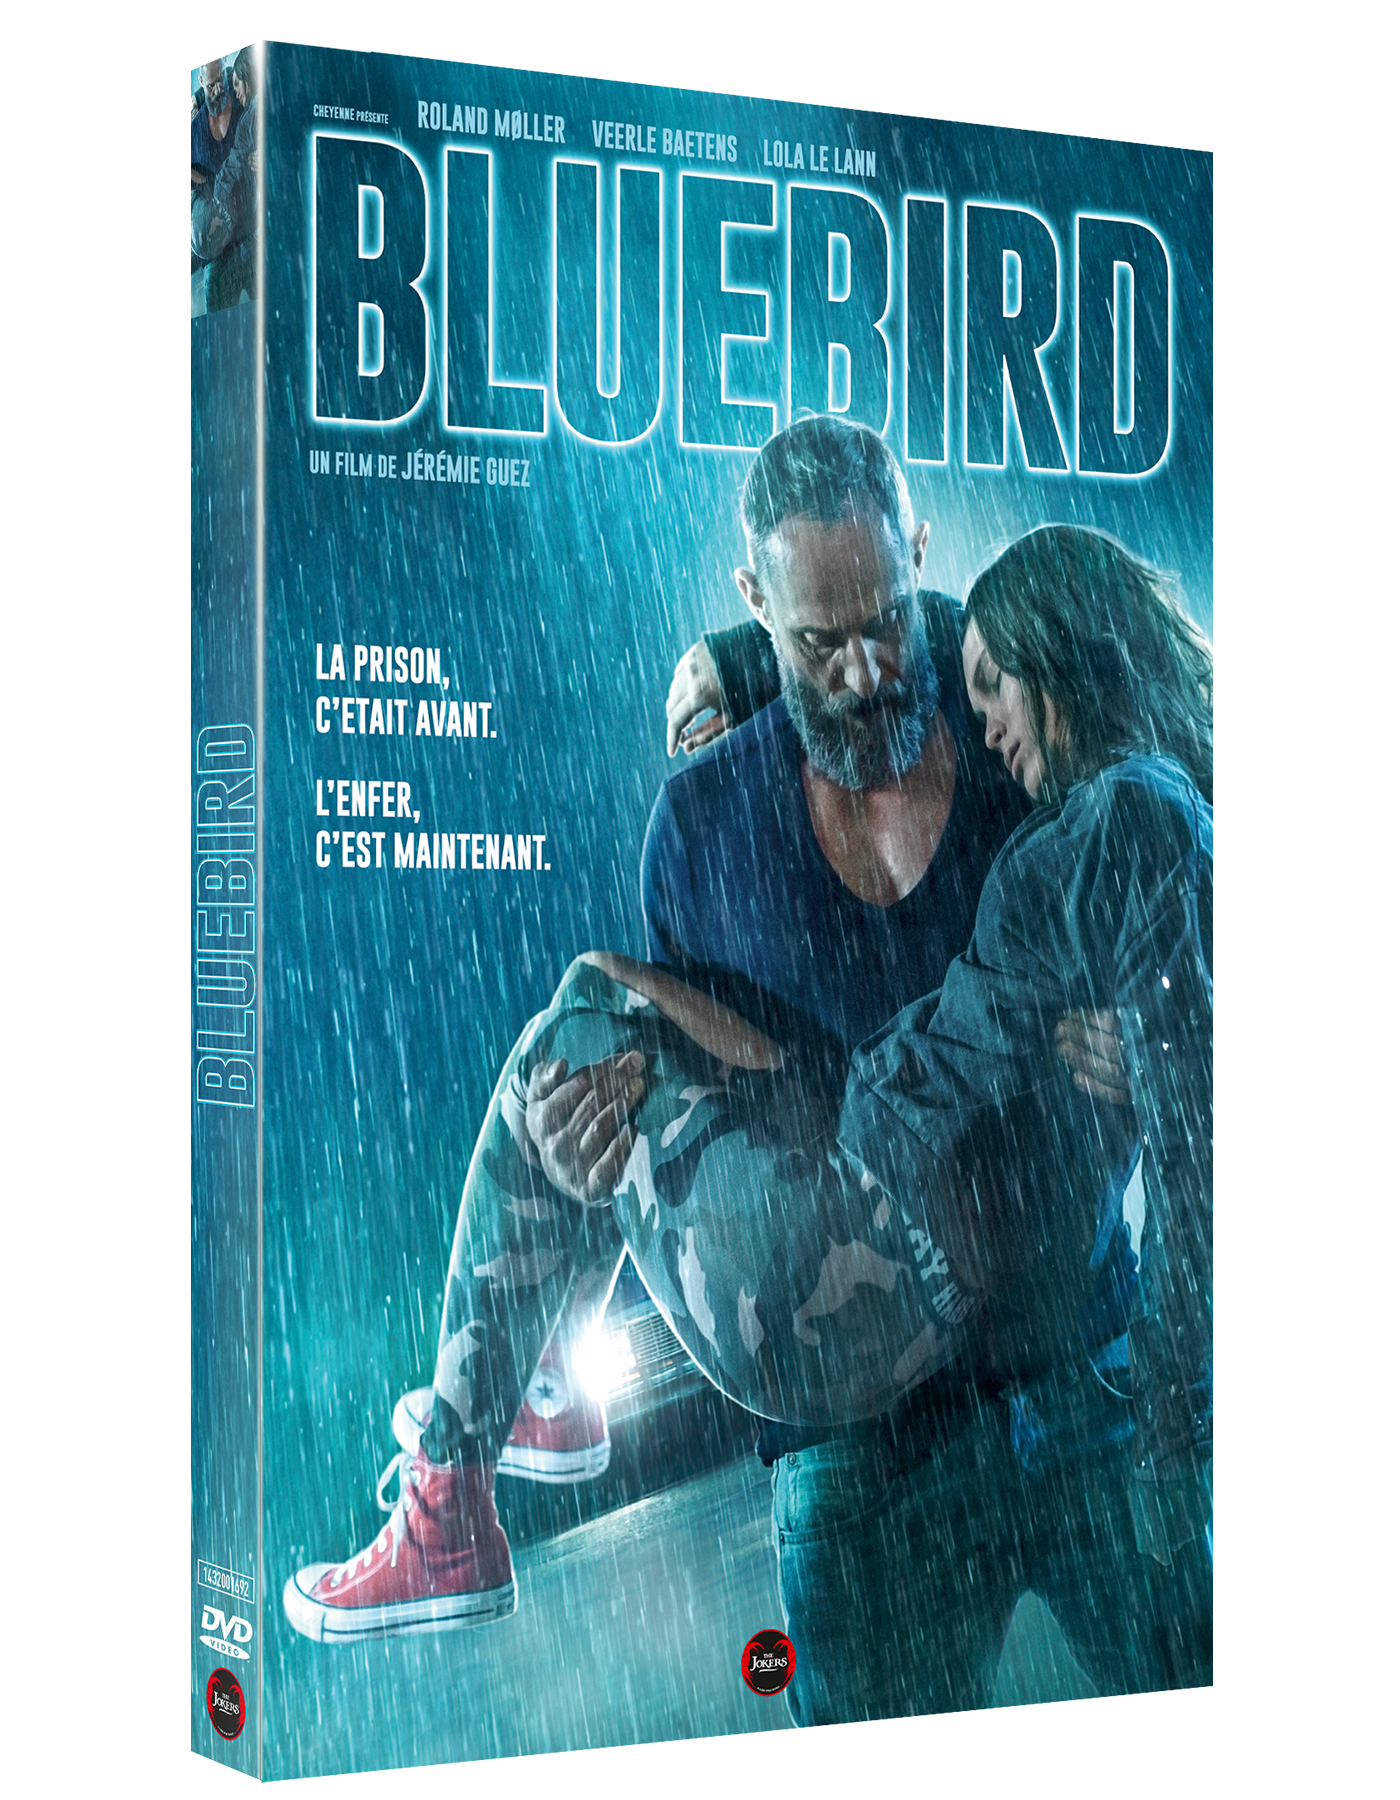 DVD "Bluebird"